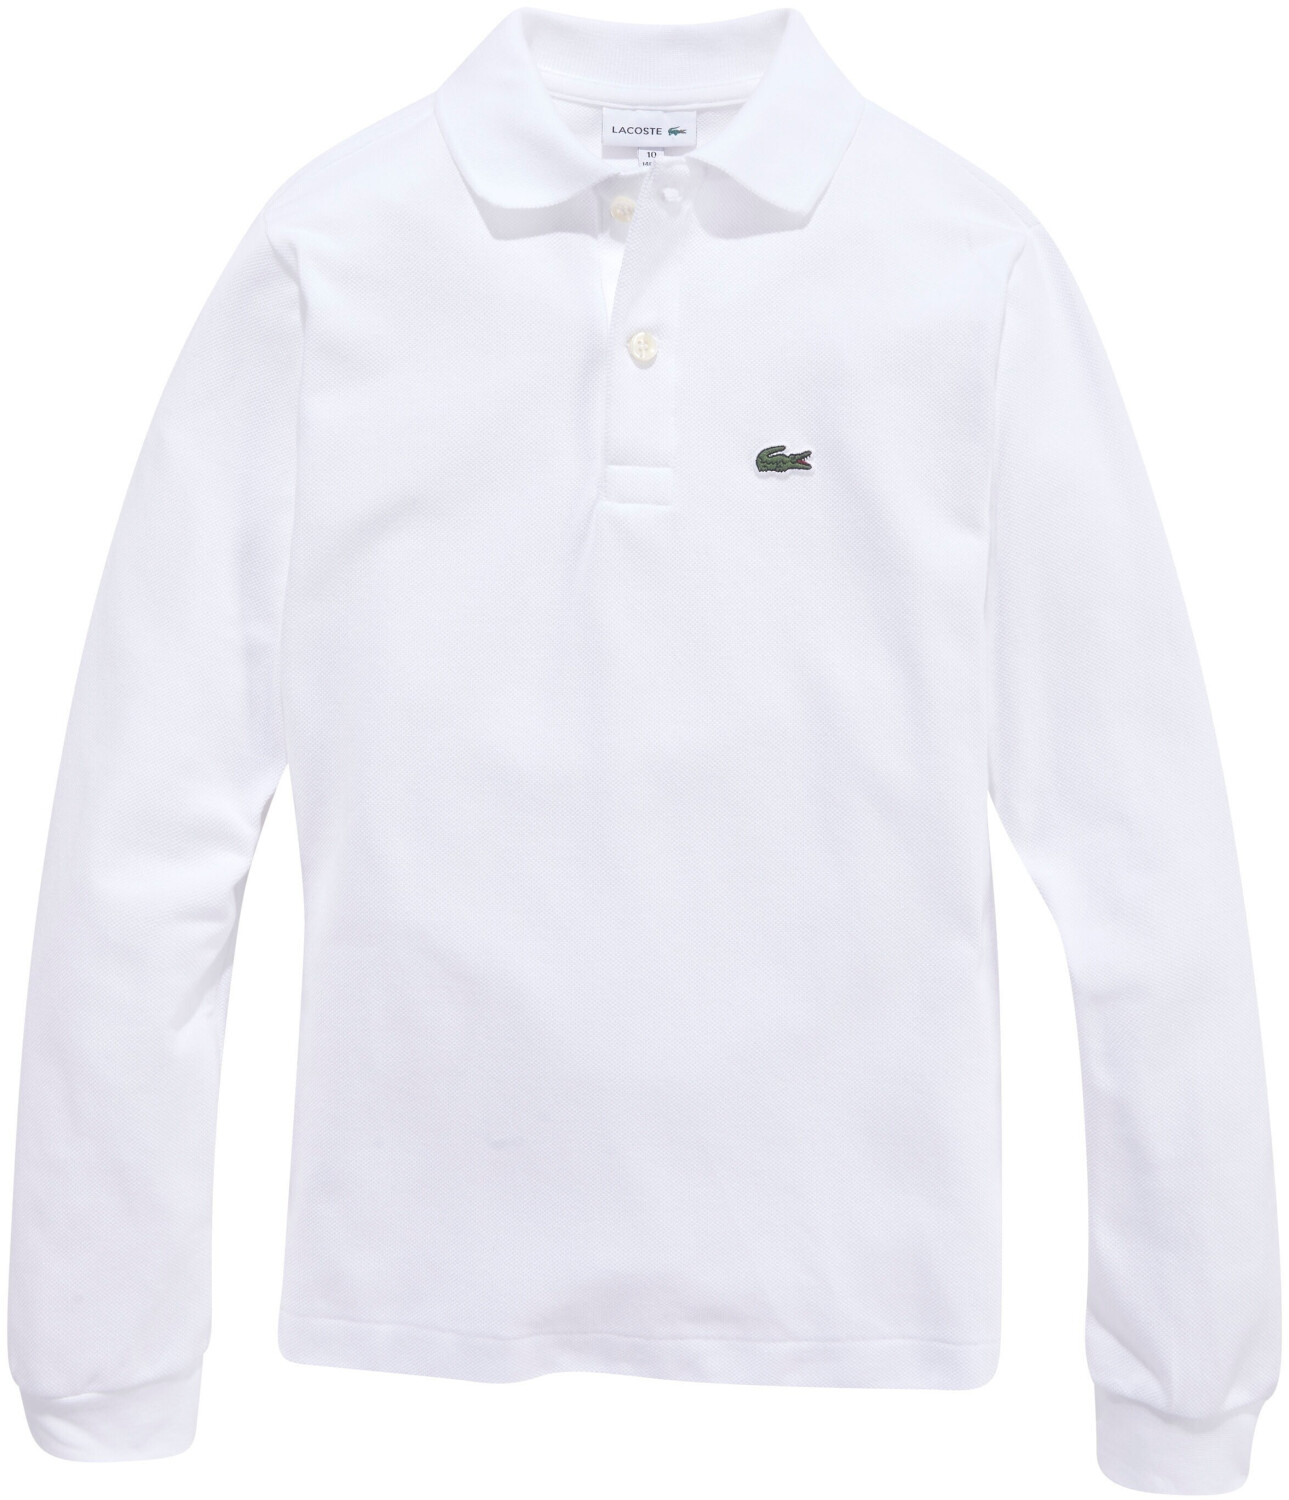 Lacoste Poloshirt (PJ8915-001) white ab 38,50 € | Preisvergleich bei